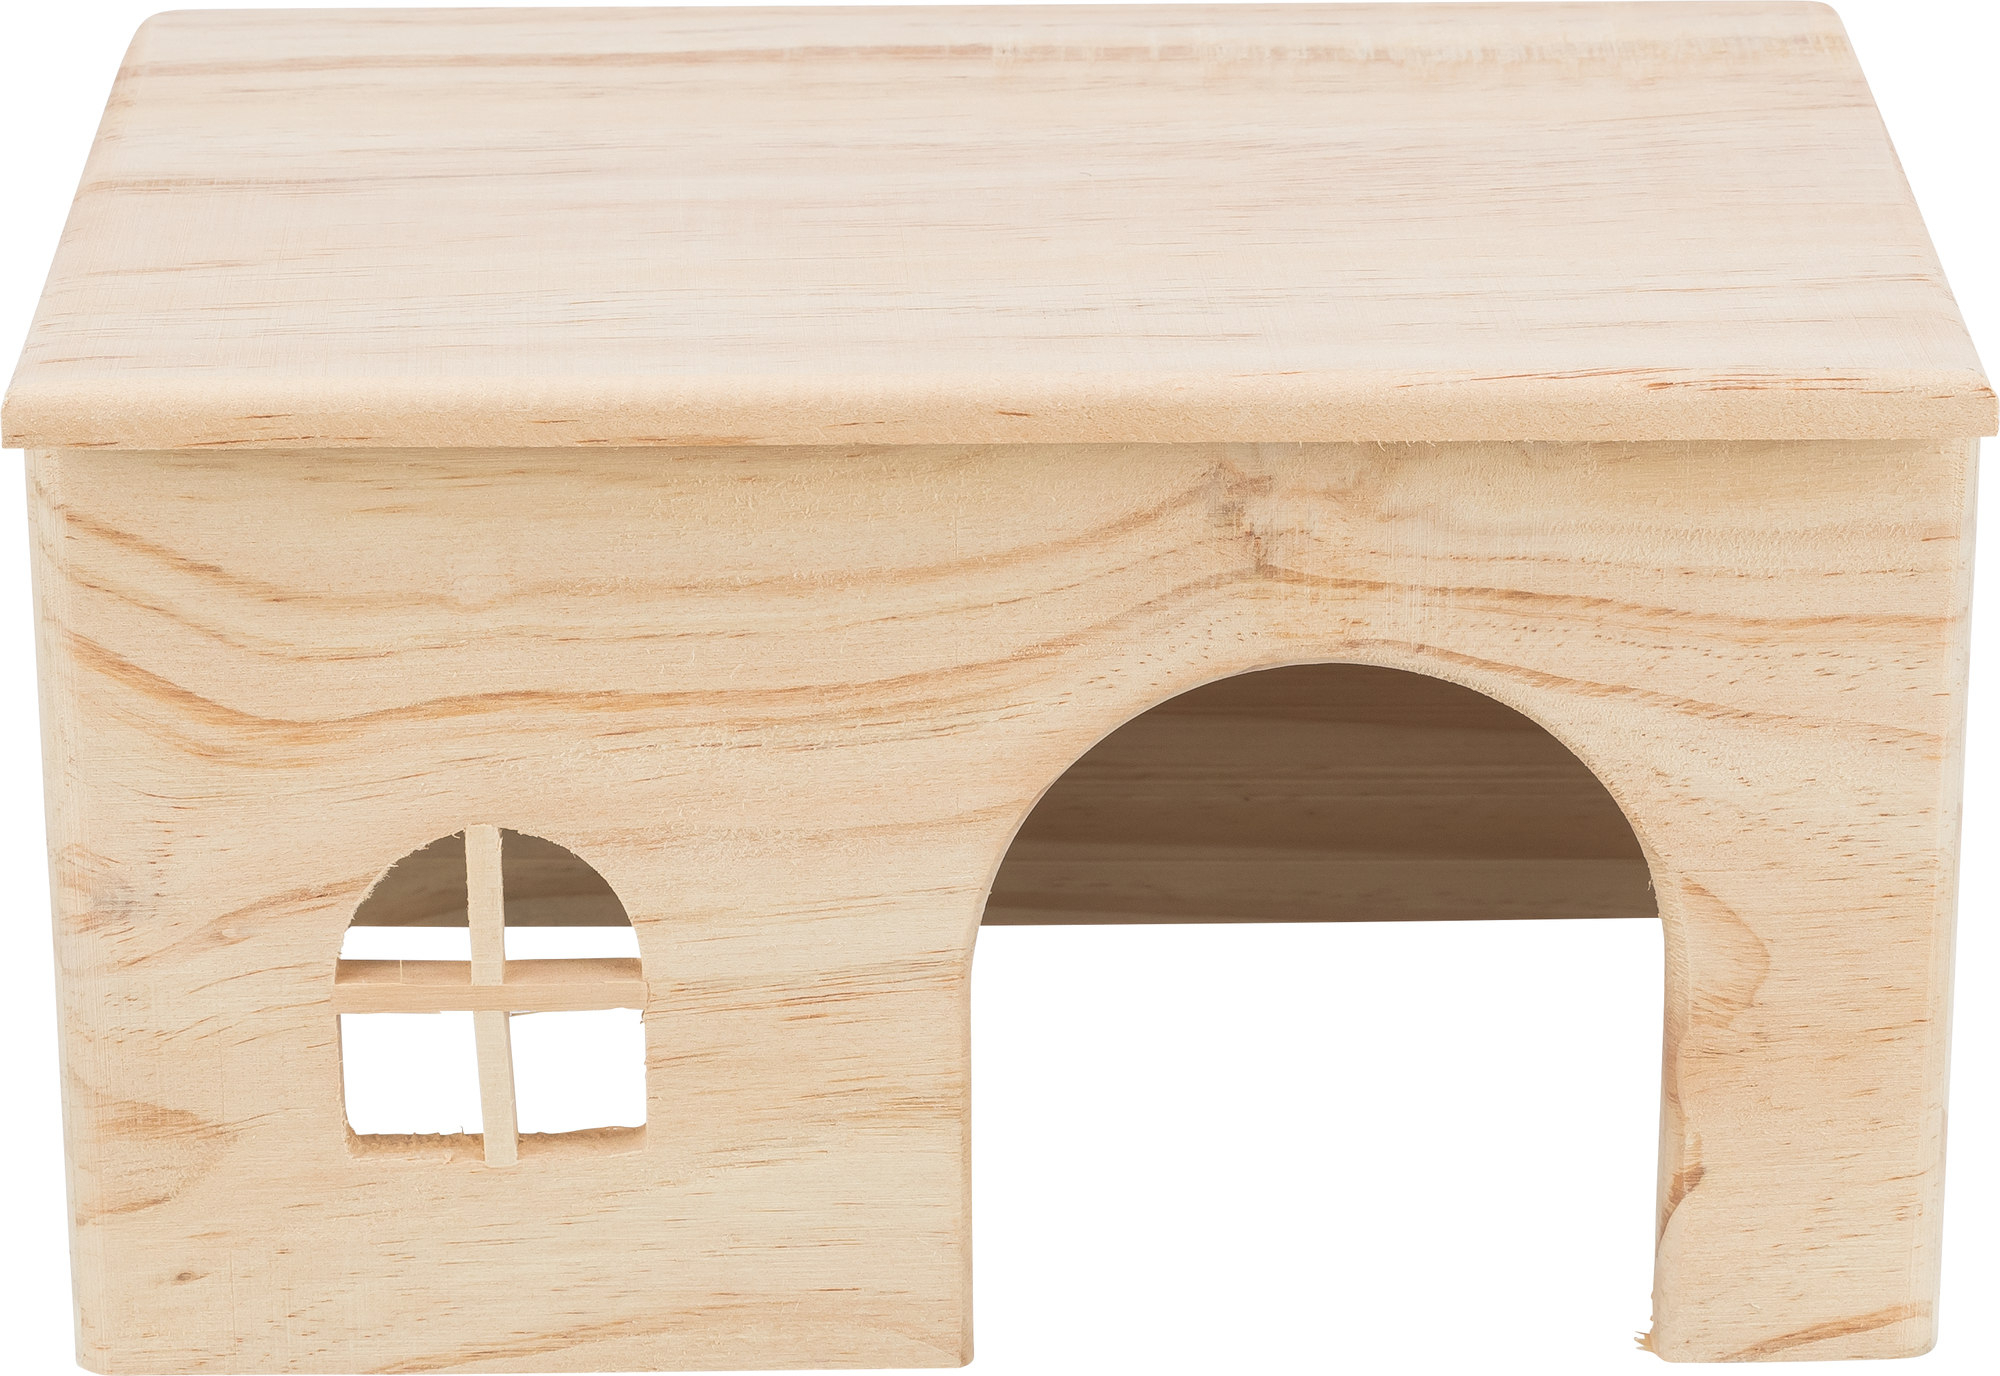 Casa in legno con tetto piano - diverse taglie disponibili